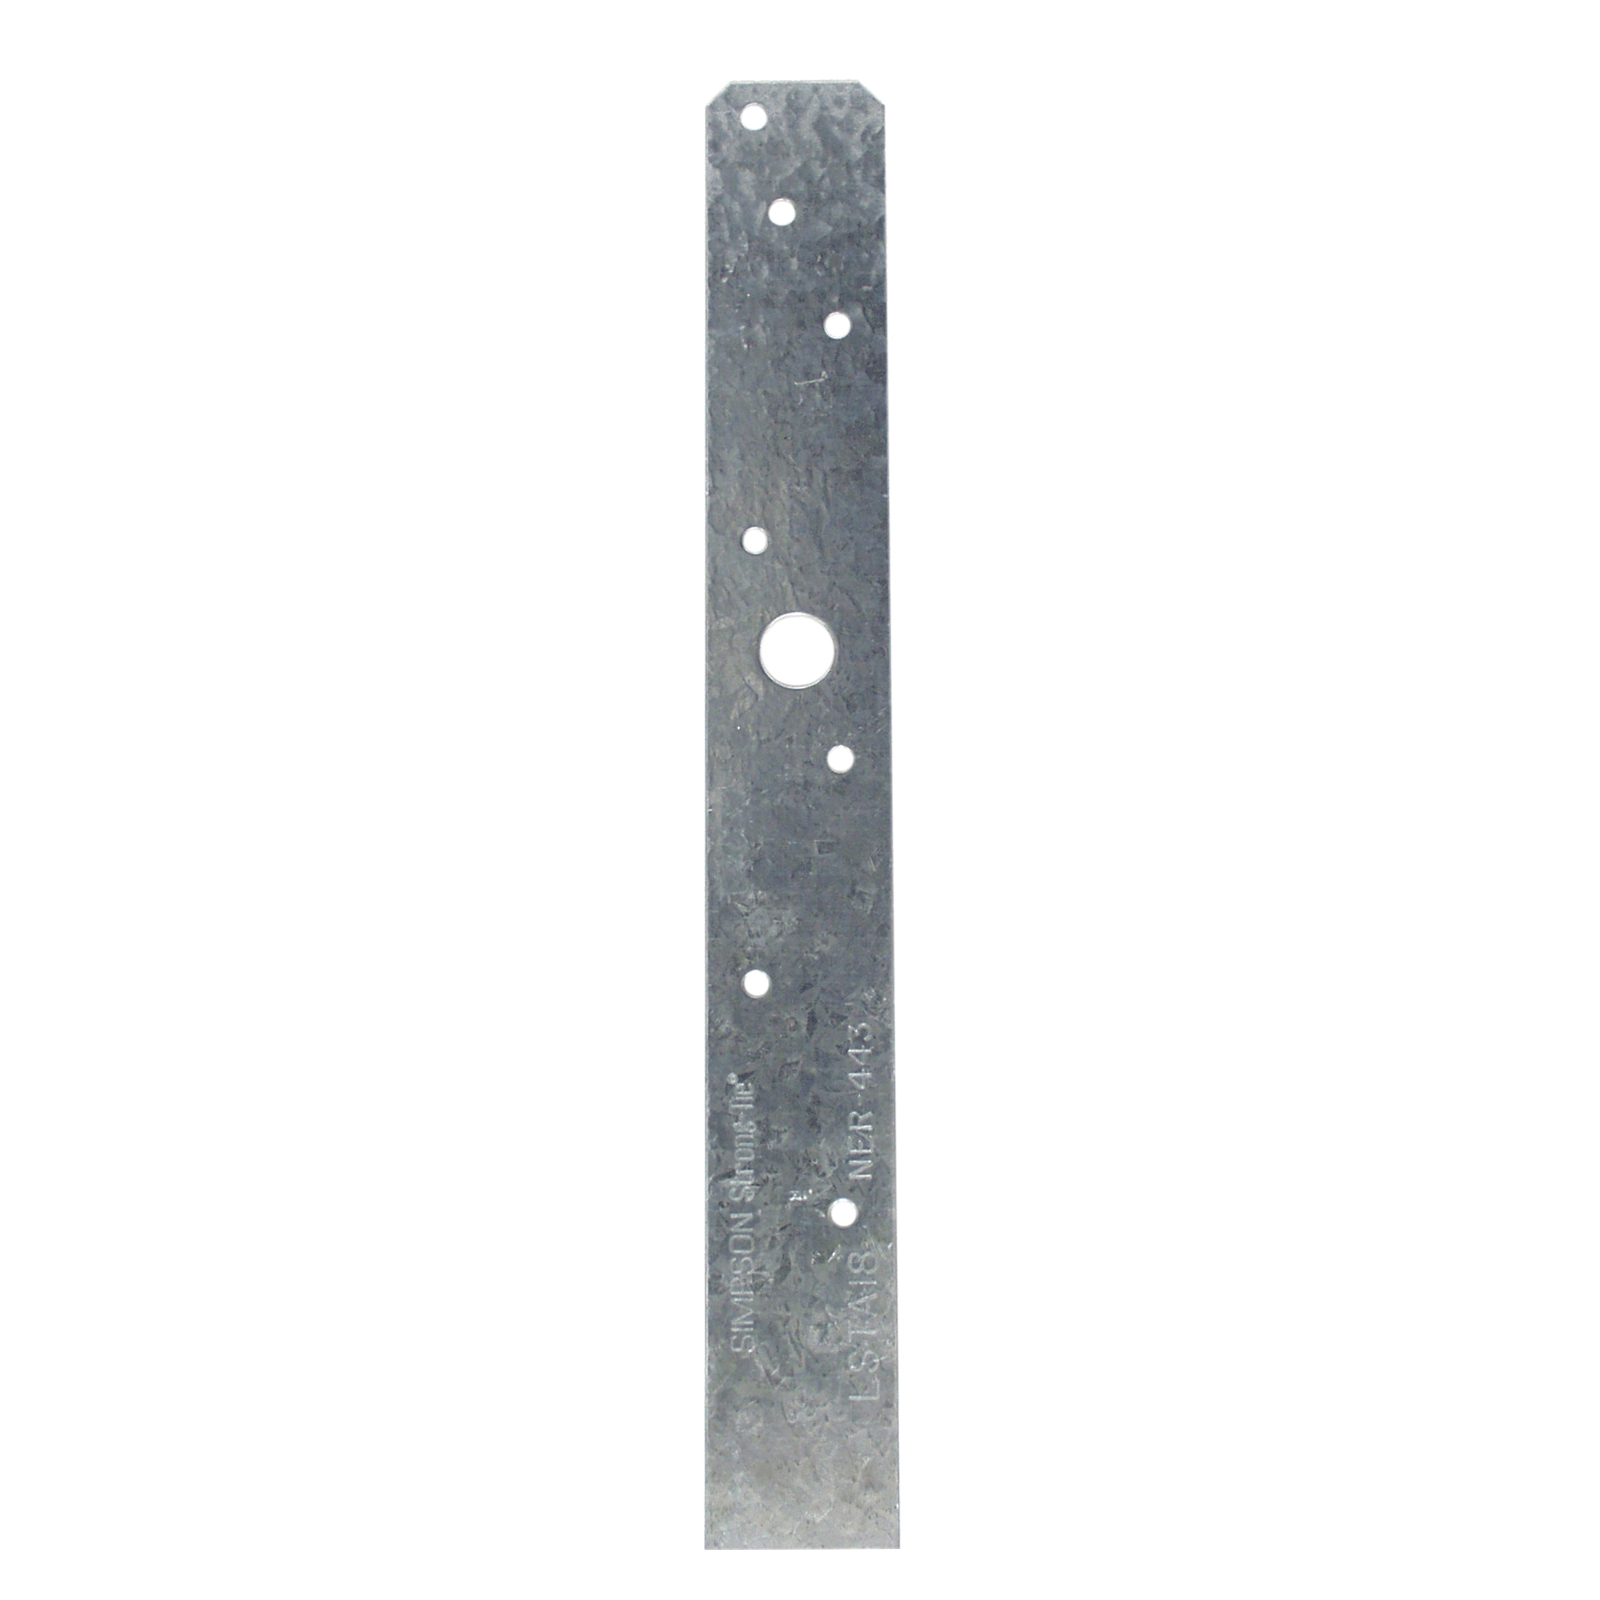 LSTA Series LSTA18 Strap Tie, 20 ga, Steel, Galvanized/Zinc